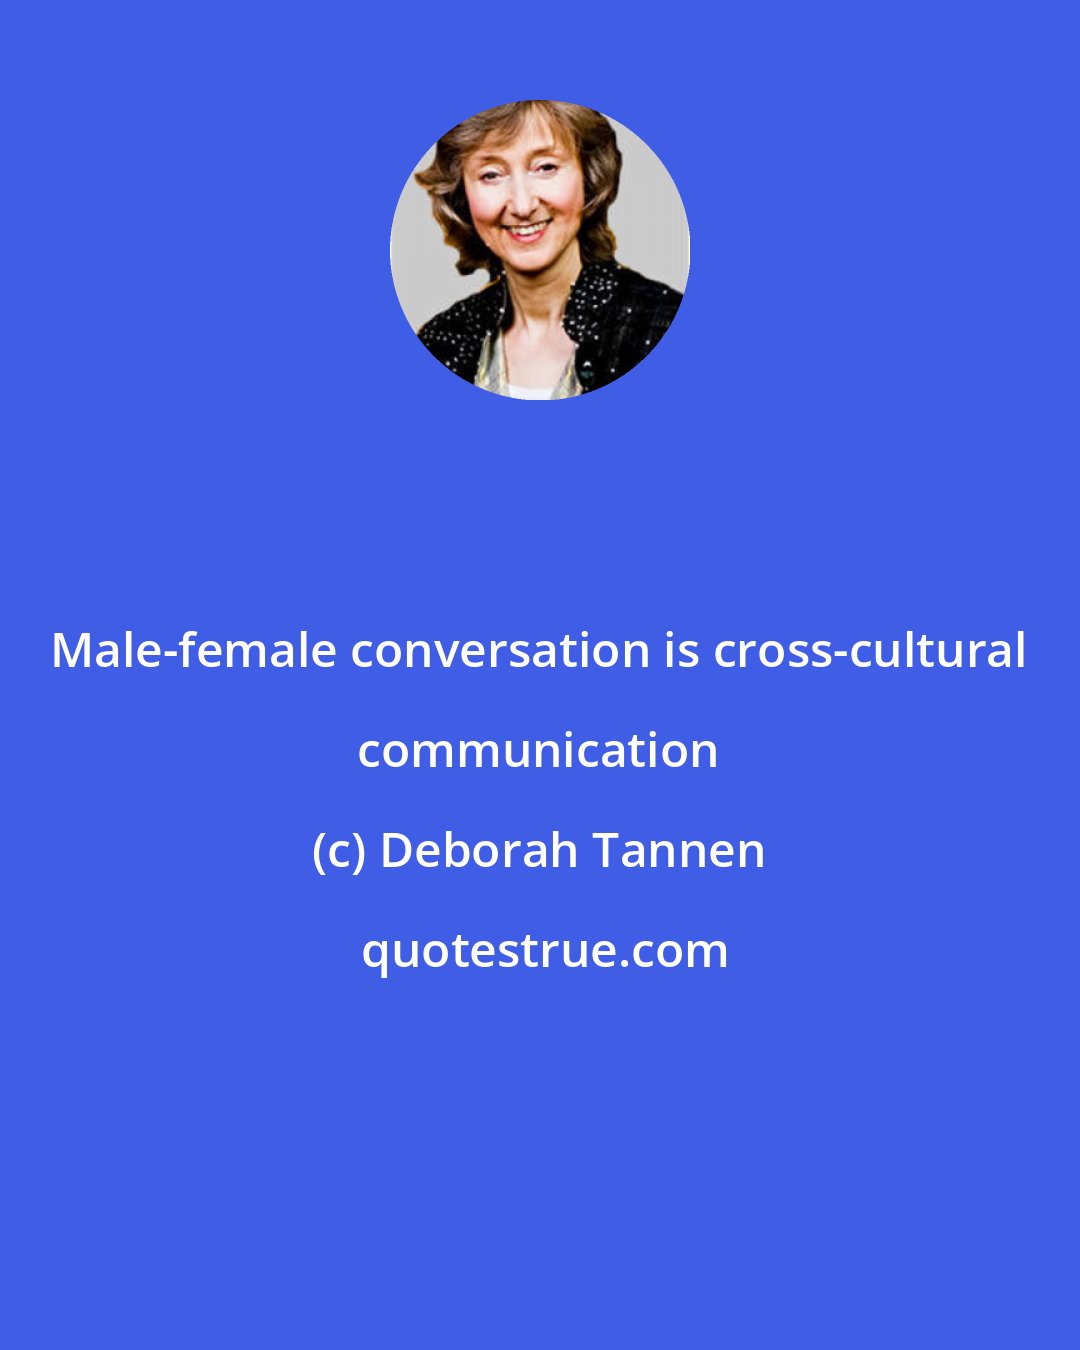 Deborah Tannen: Male-female conversation is cross-cultural communication